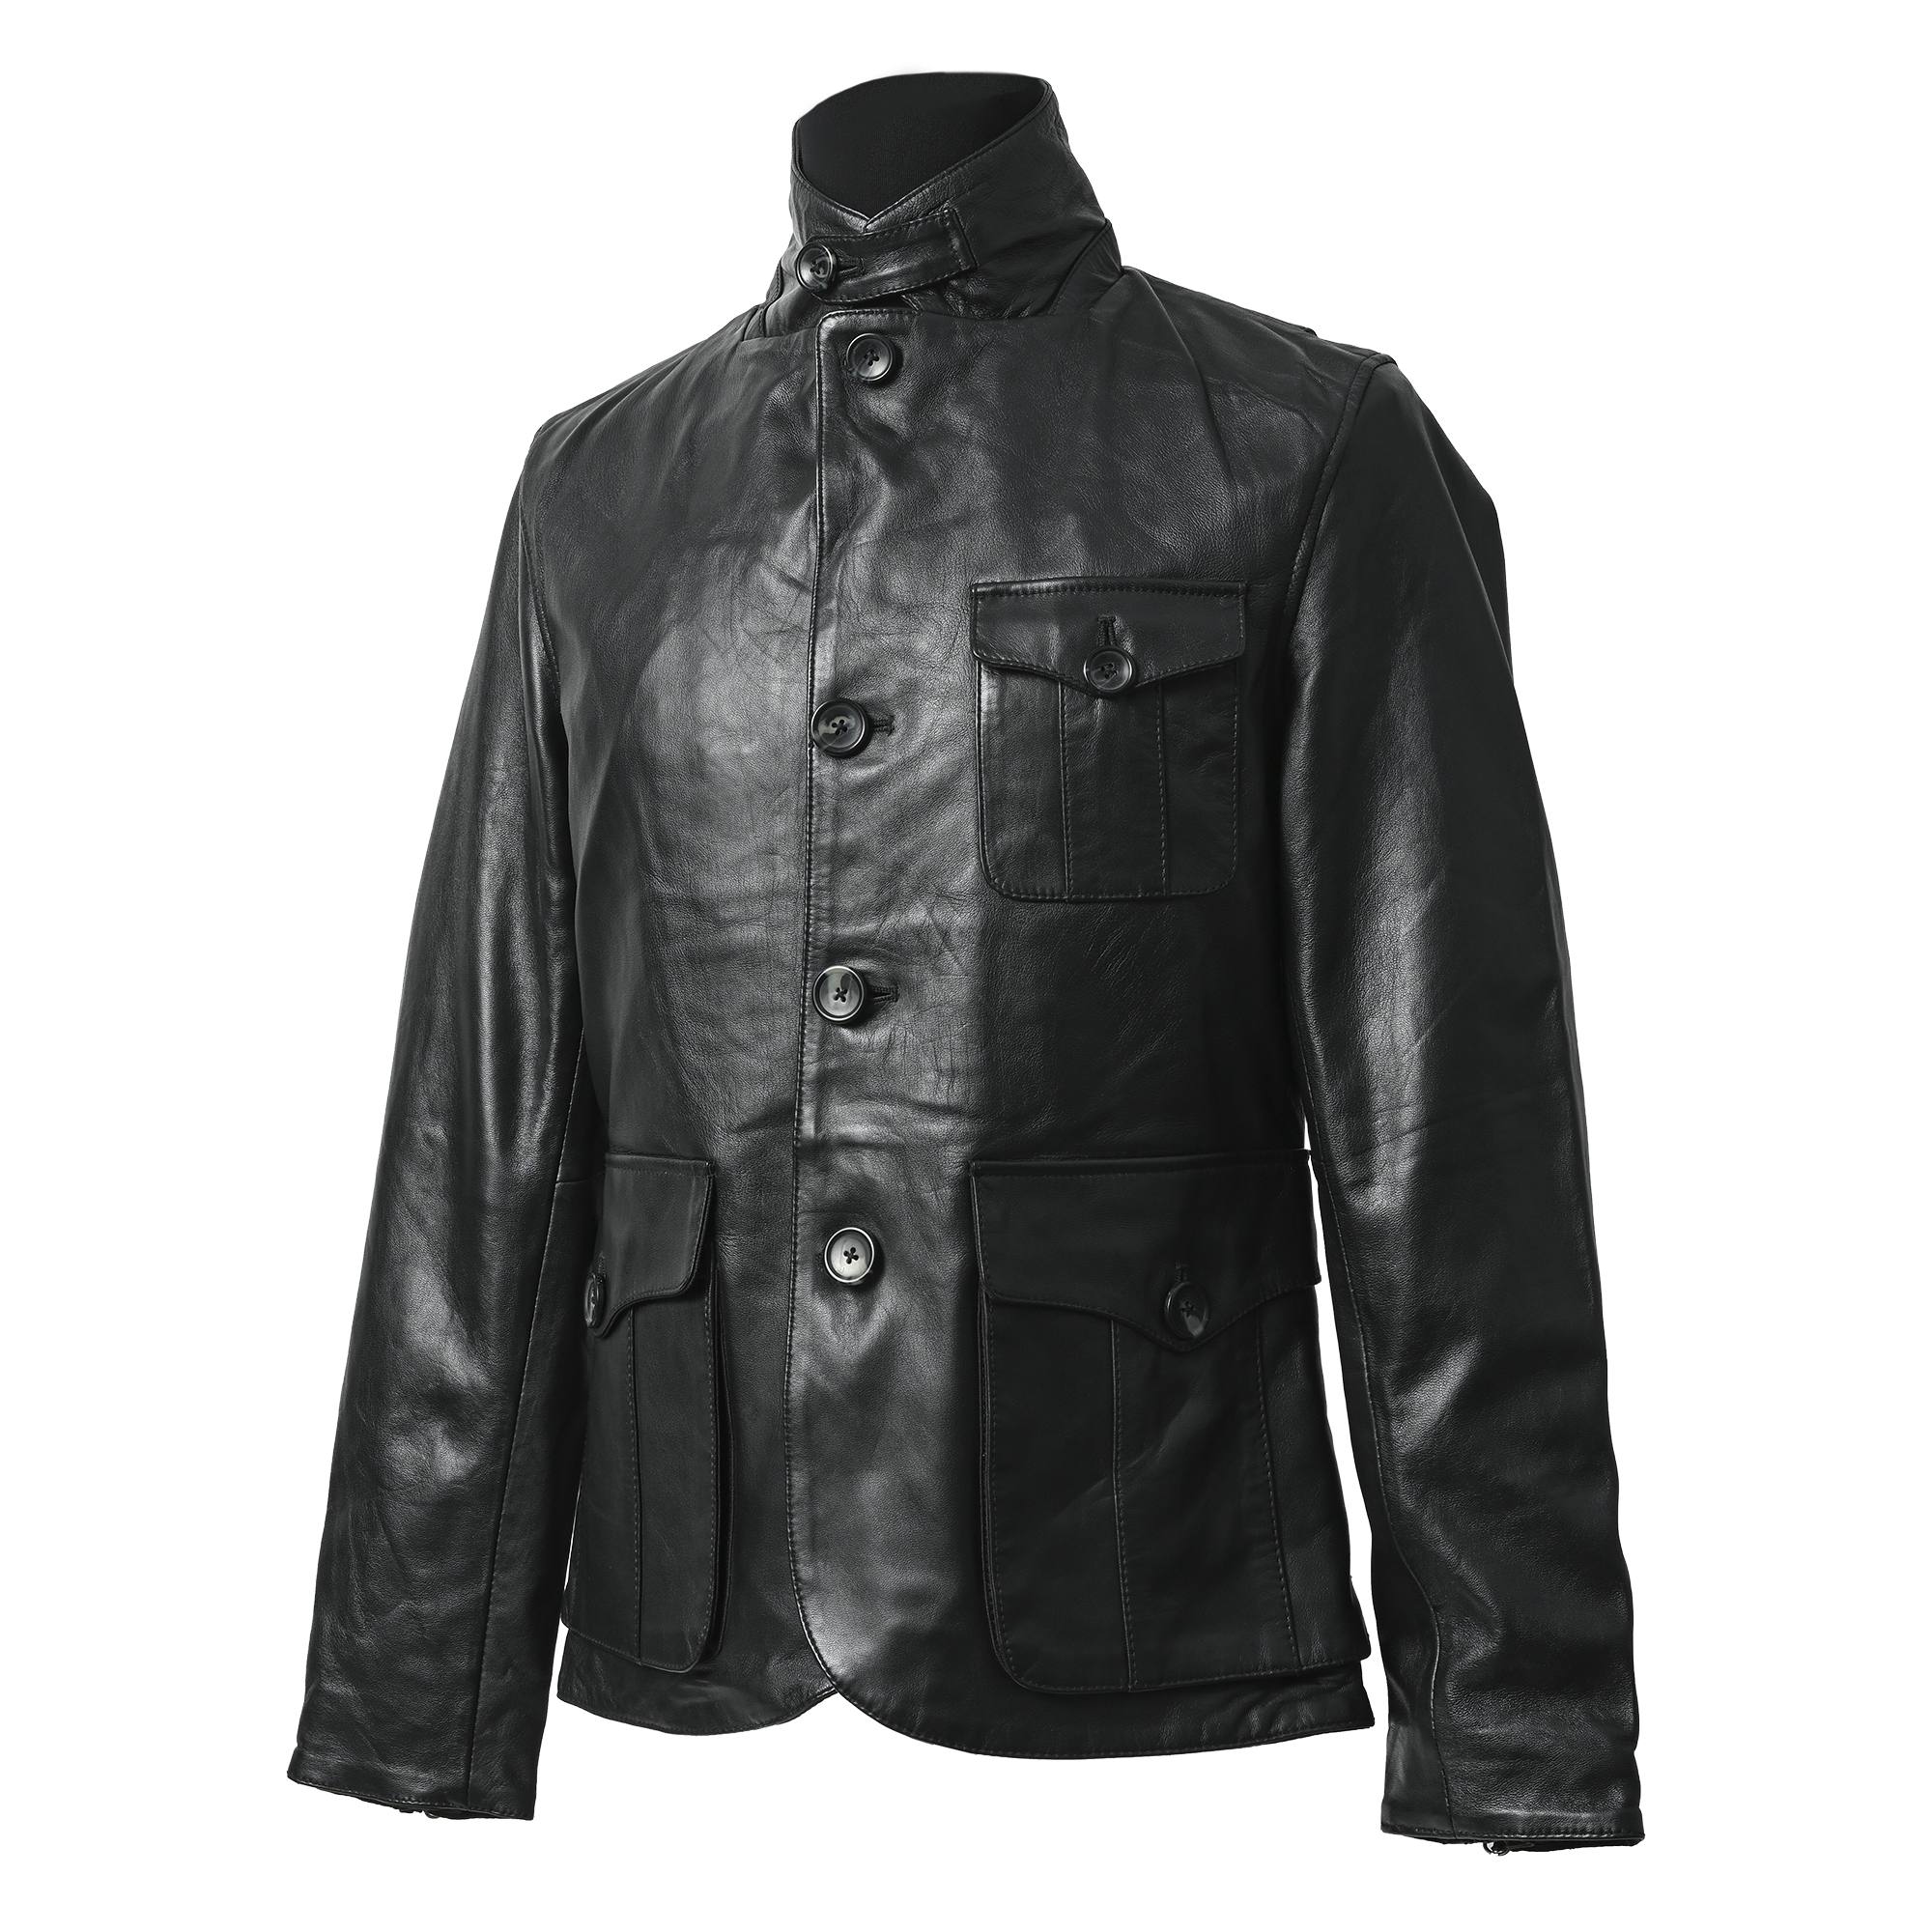 RIDEZ GENTS JACKET Motorcycle Leather Jacket Black RLJ900 